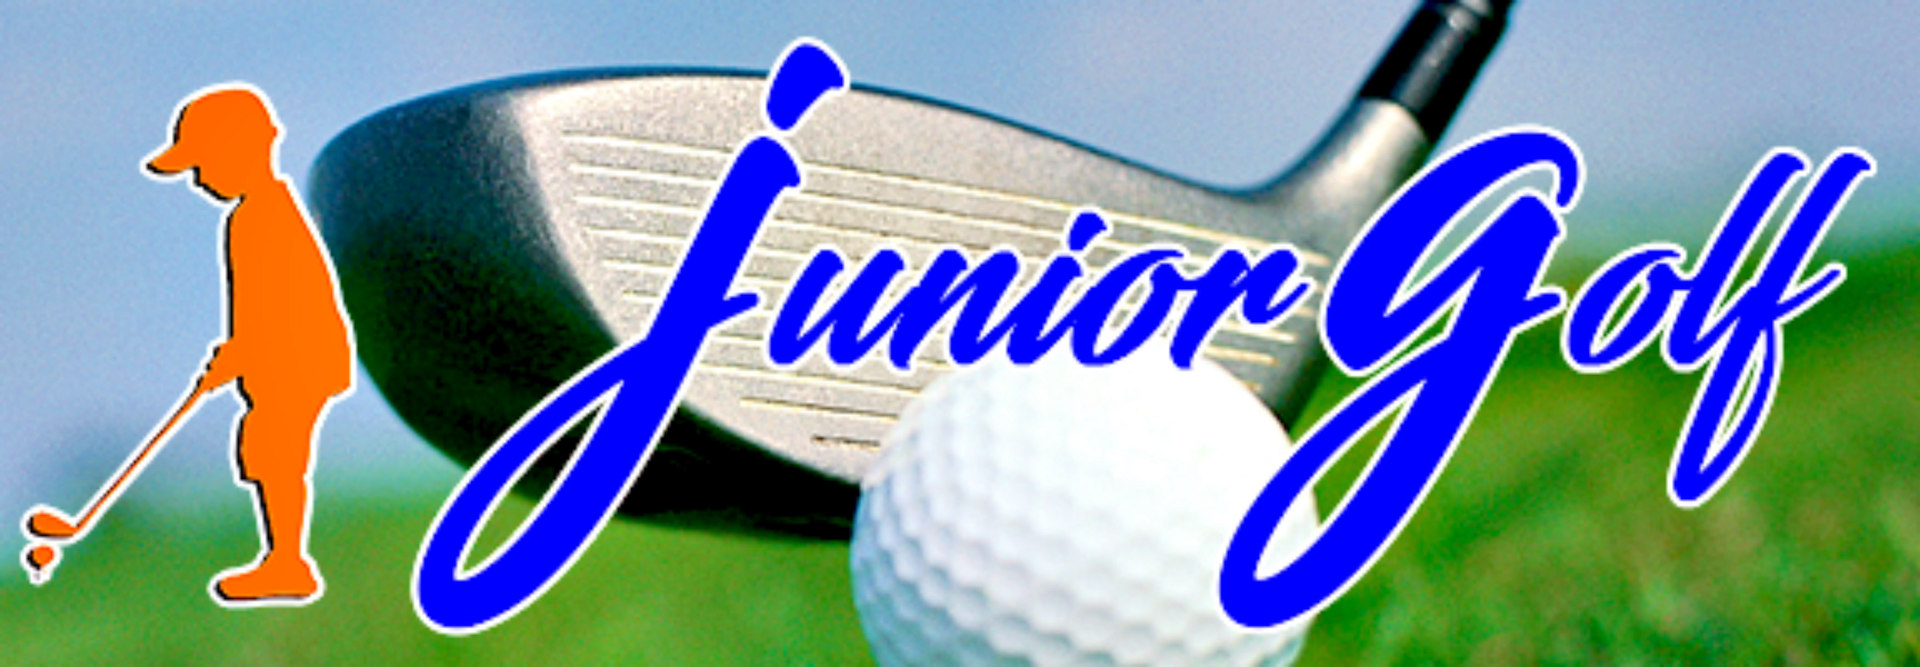 junior golf header